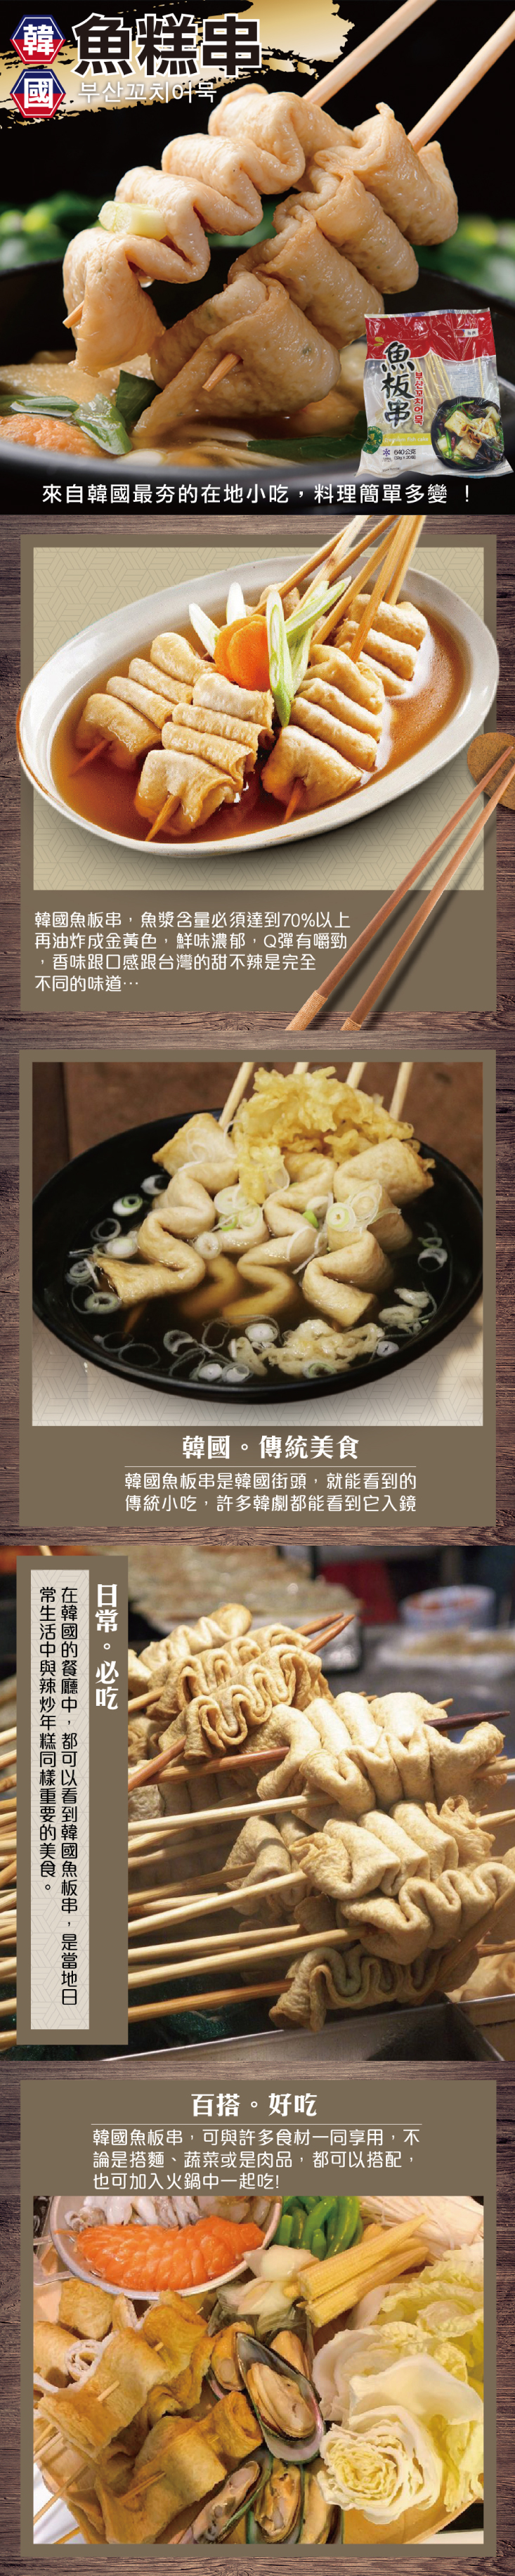 韓國釜山魚糕串/魚板串(640g/20串/包)